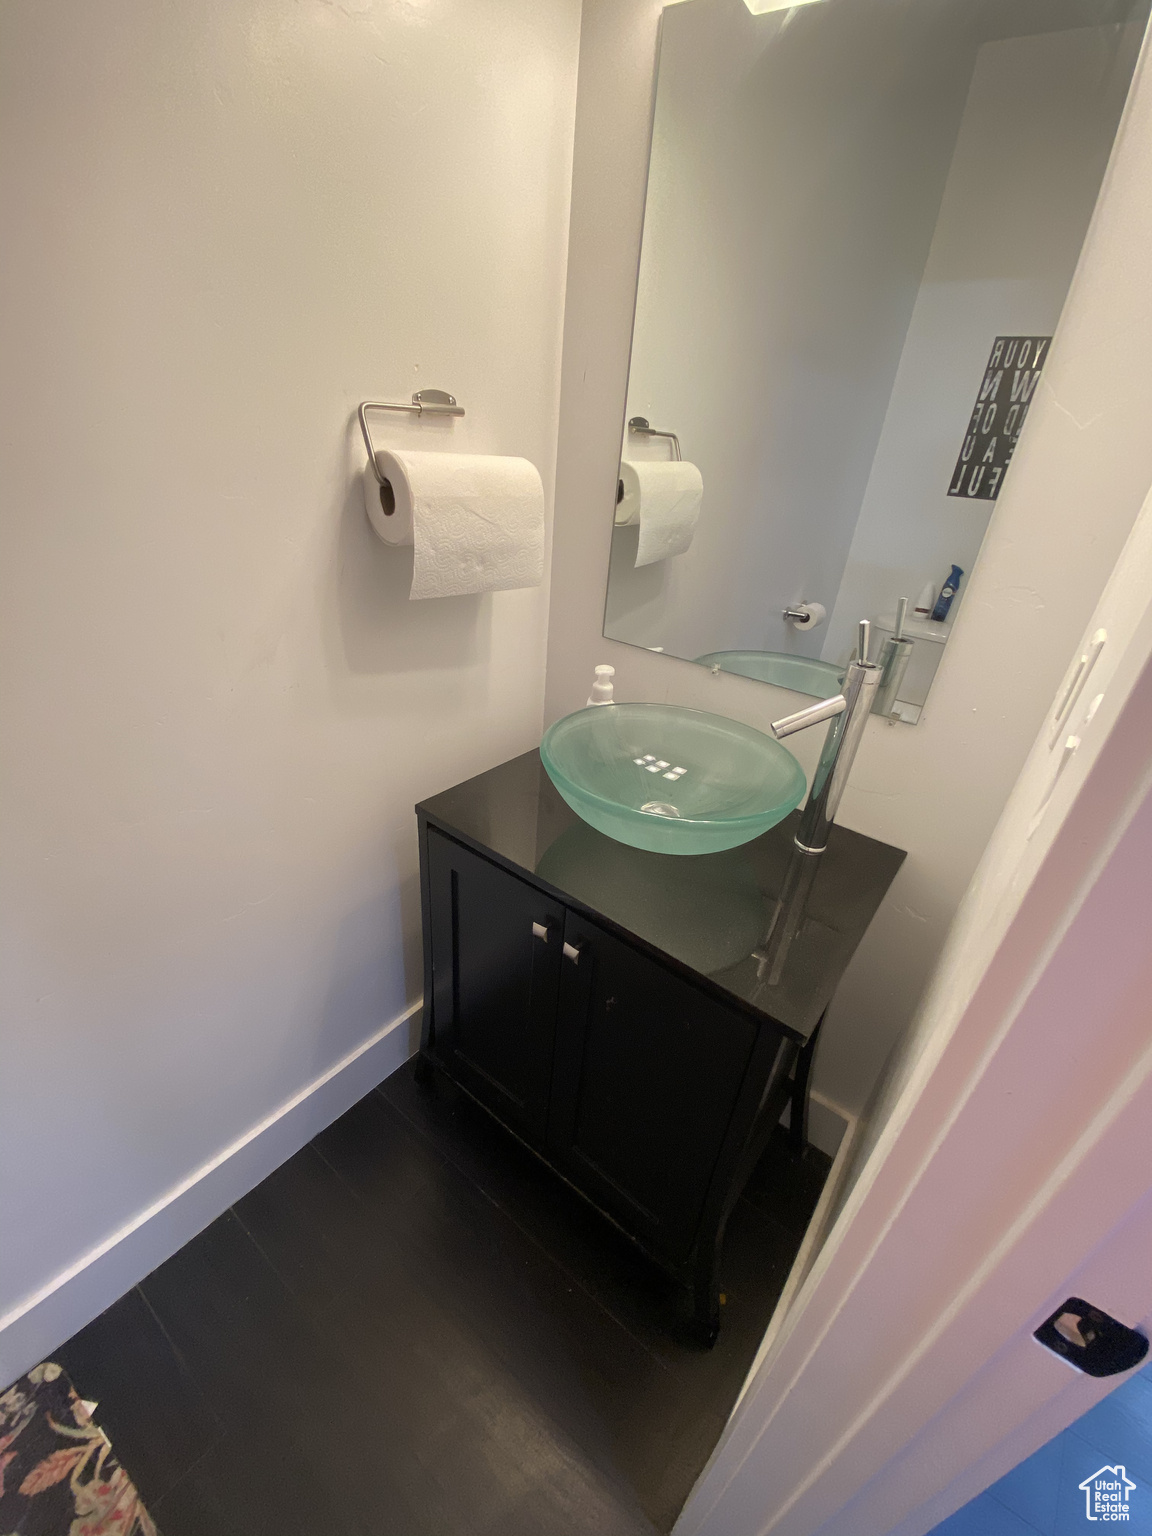 Bathroom featuring hardwood / wood-style floors and vanity